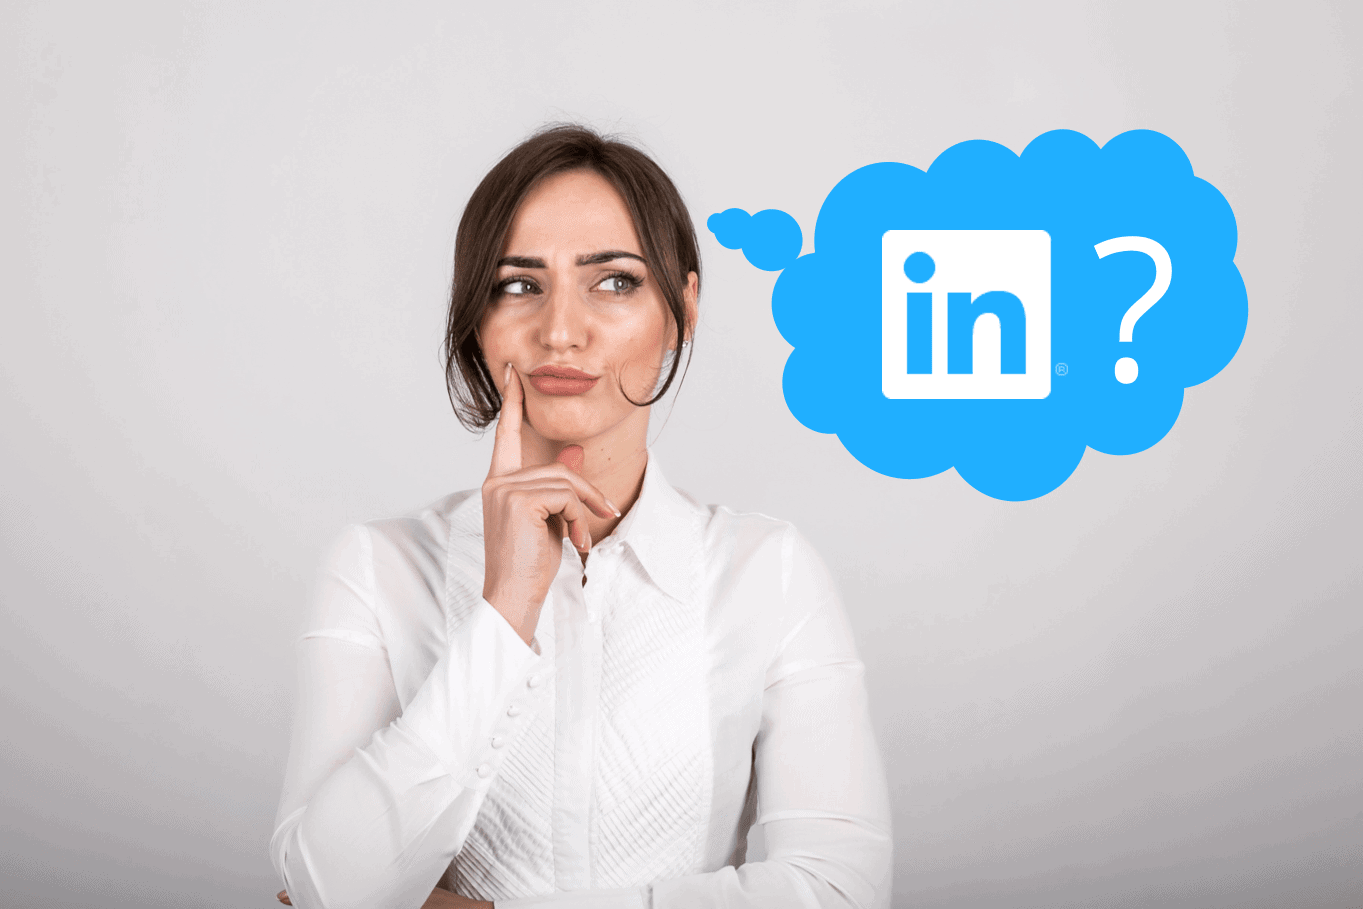 Who uses LinkedIn?